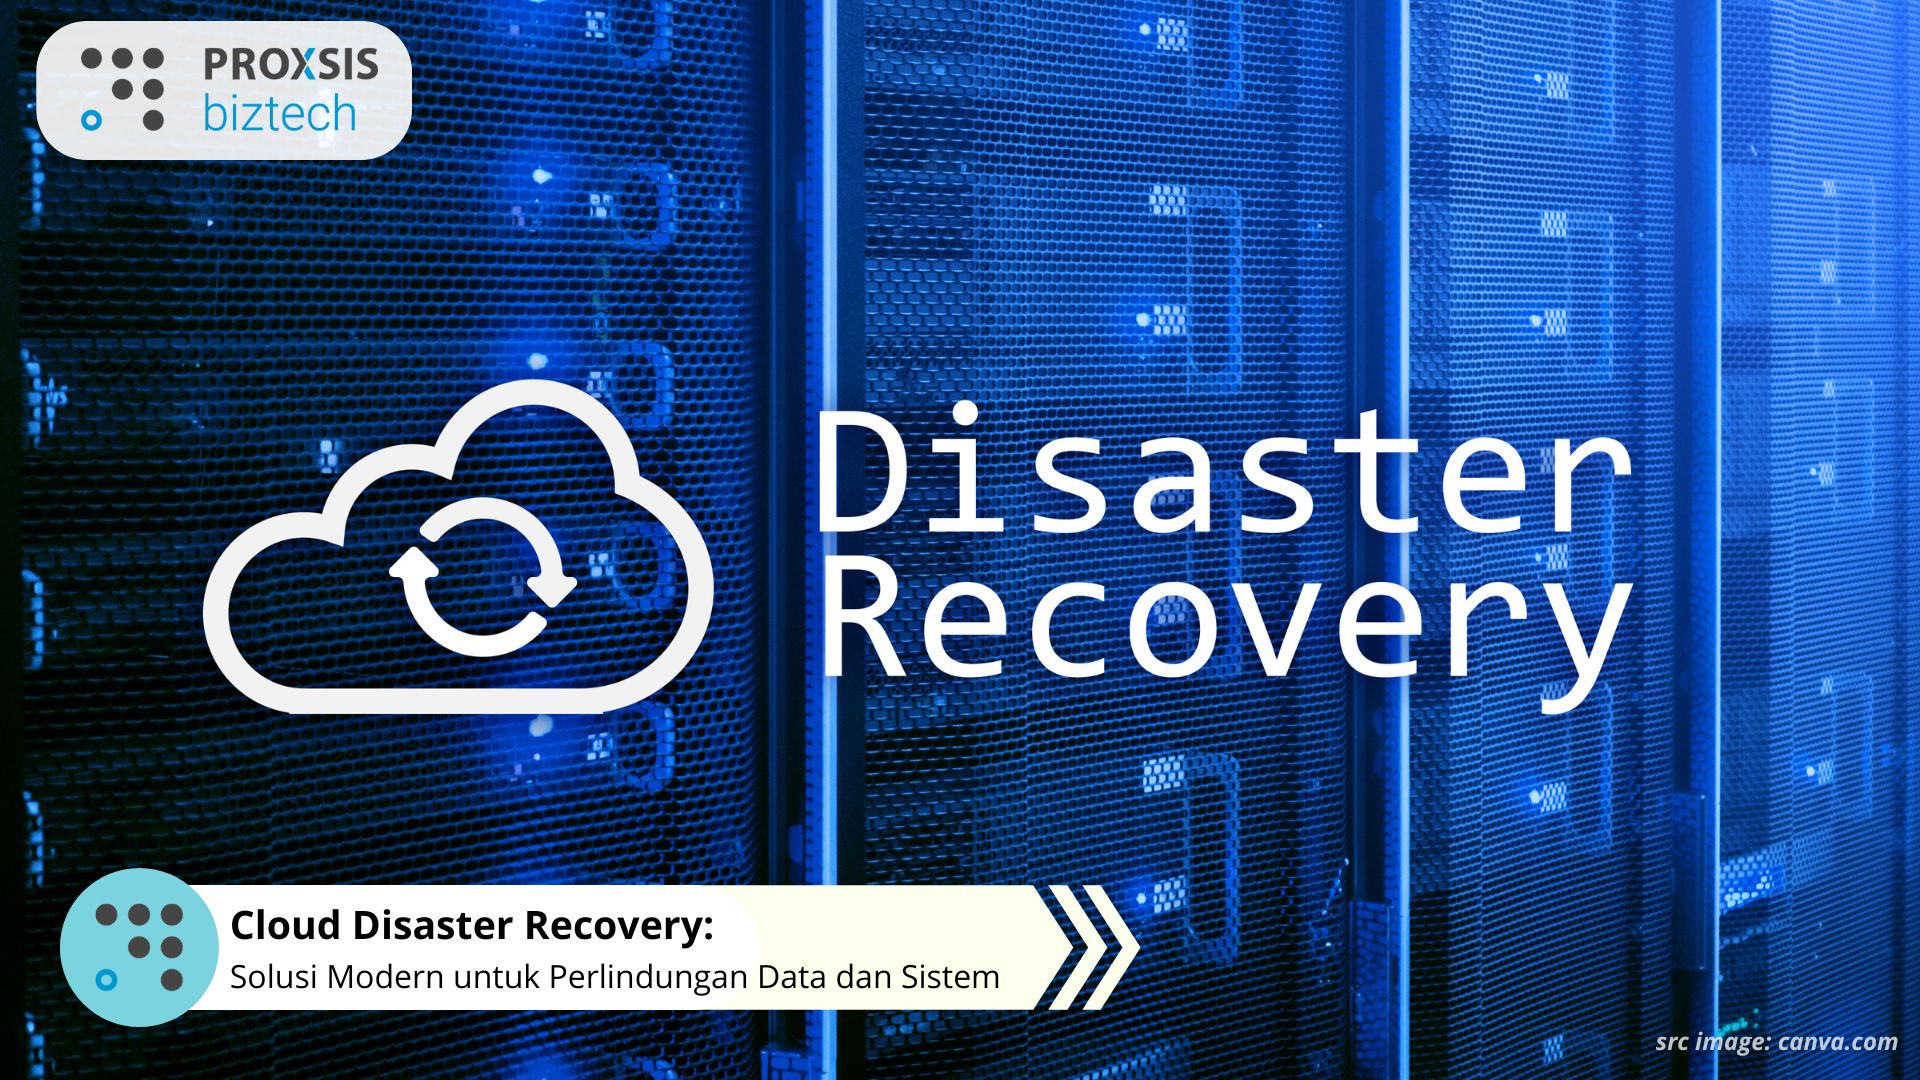 Cloud Disaster Recovery: Solusi Modern untuk Perlindungan Data dan Sistem